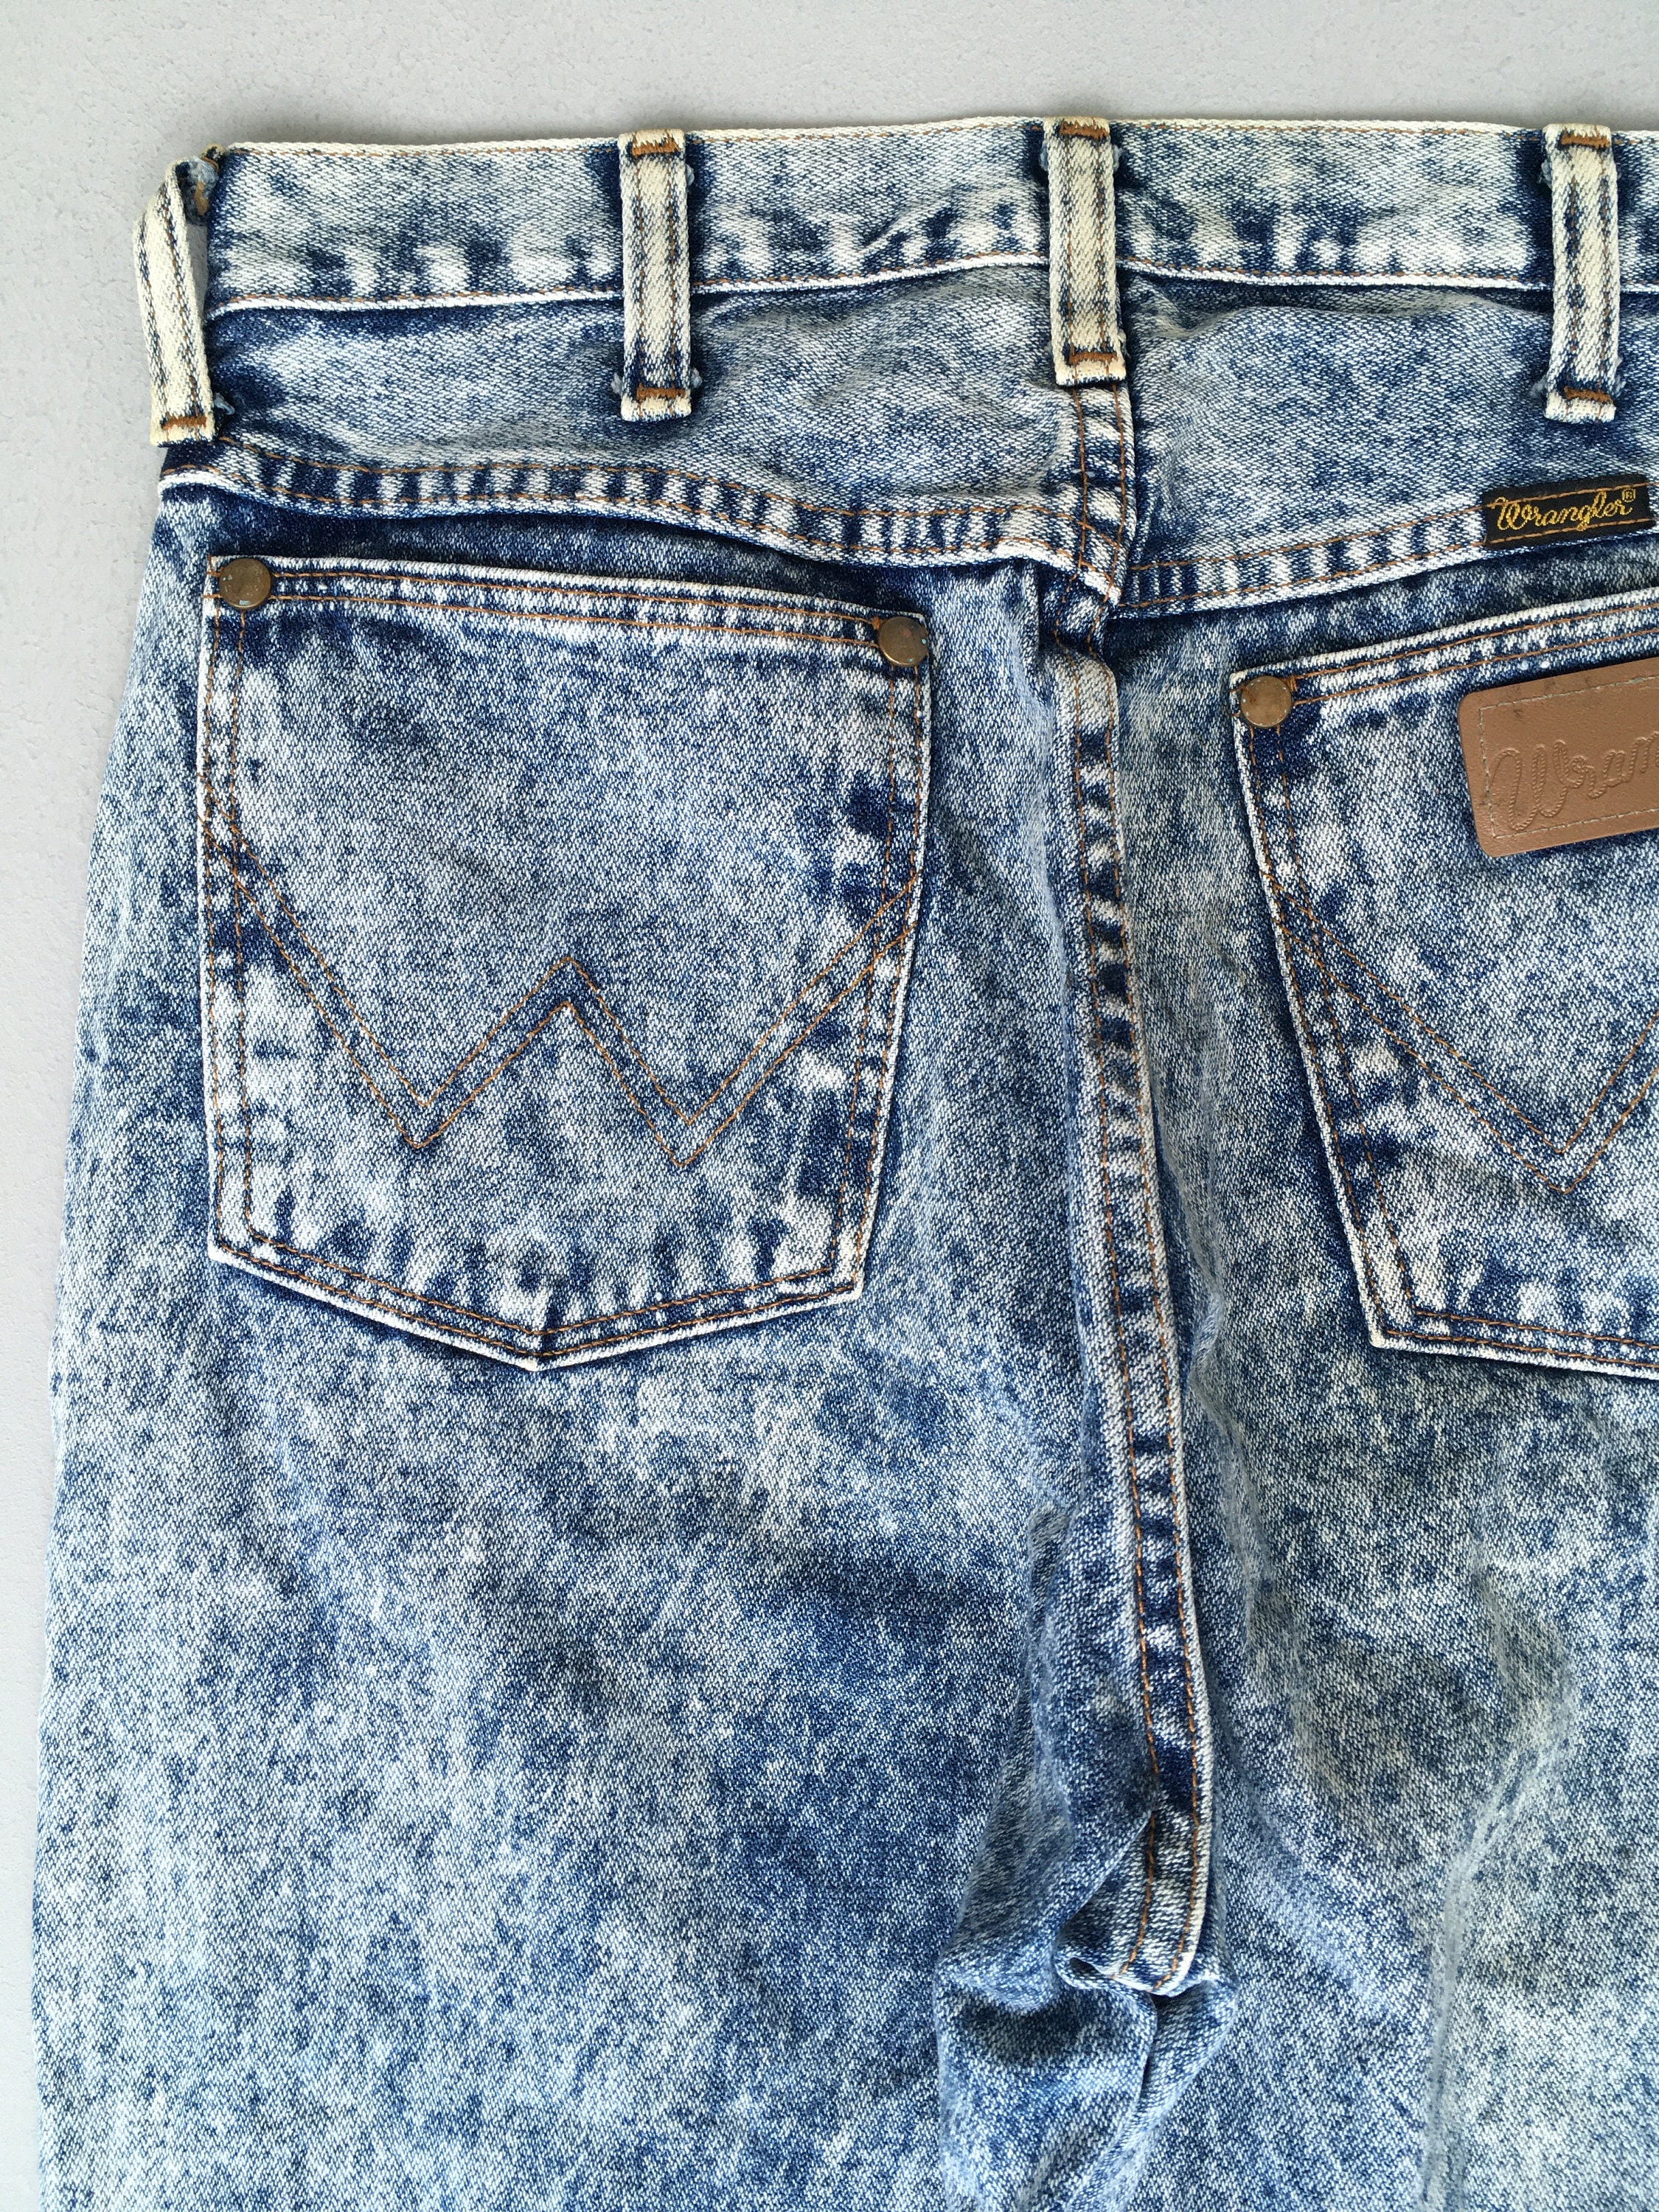 Size  Vintage 90s Wrangler Acid Wash Jeans Stone Washed - Etsy  Denmark